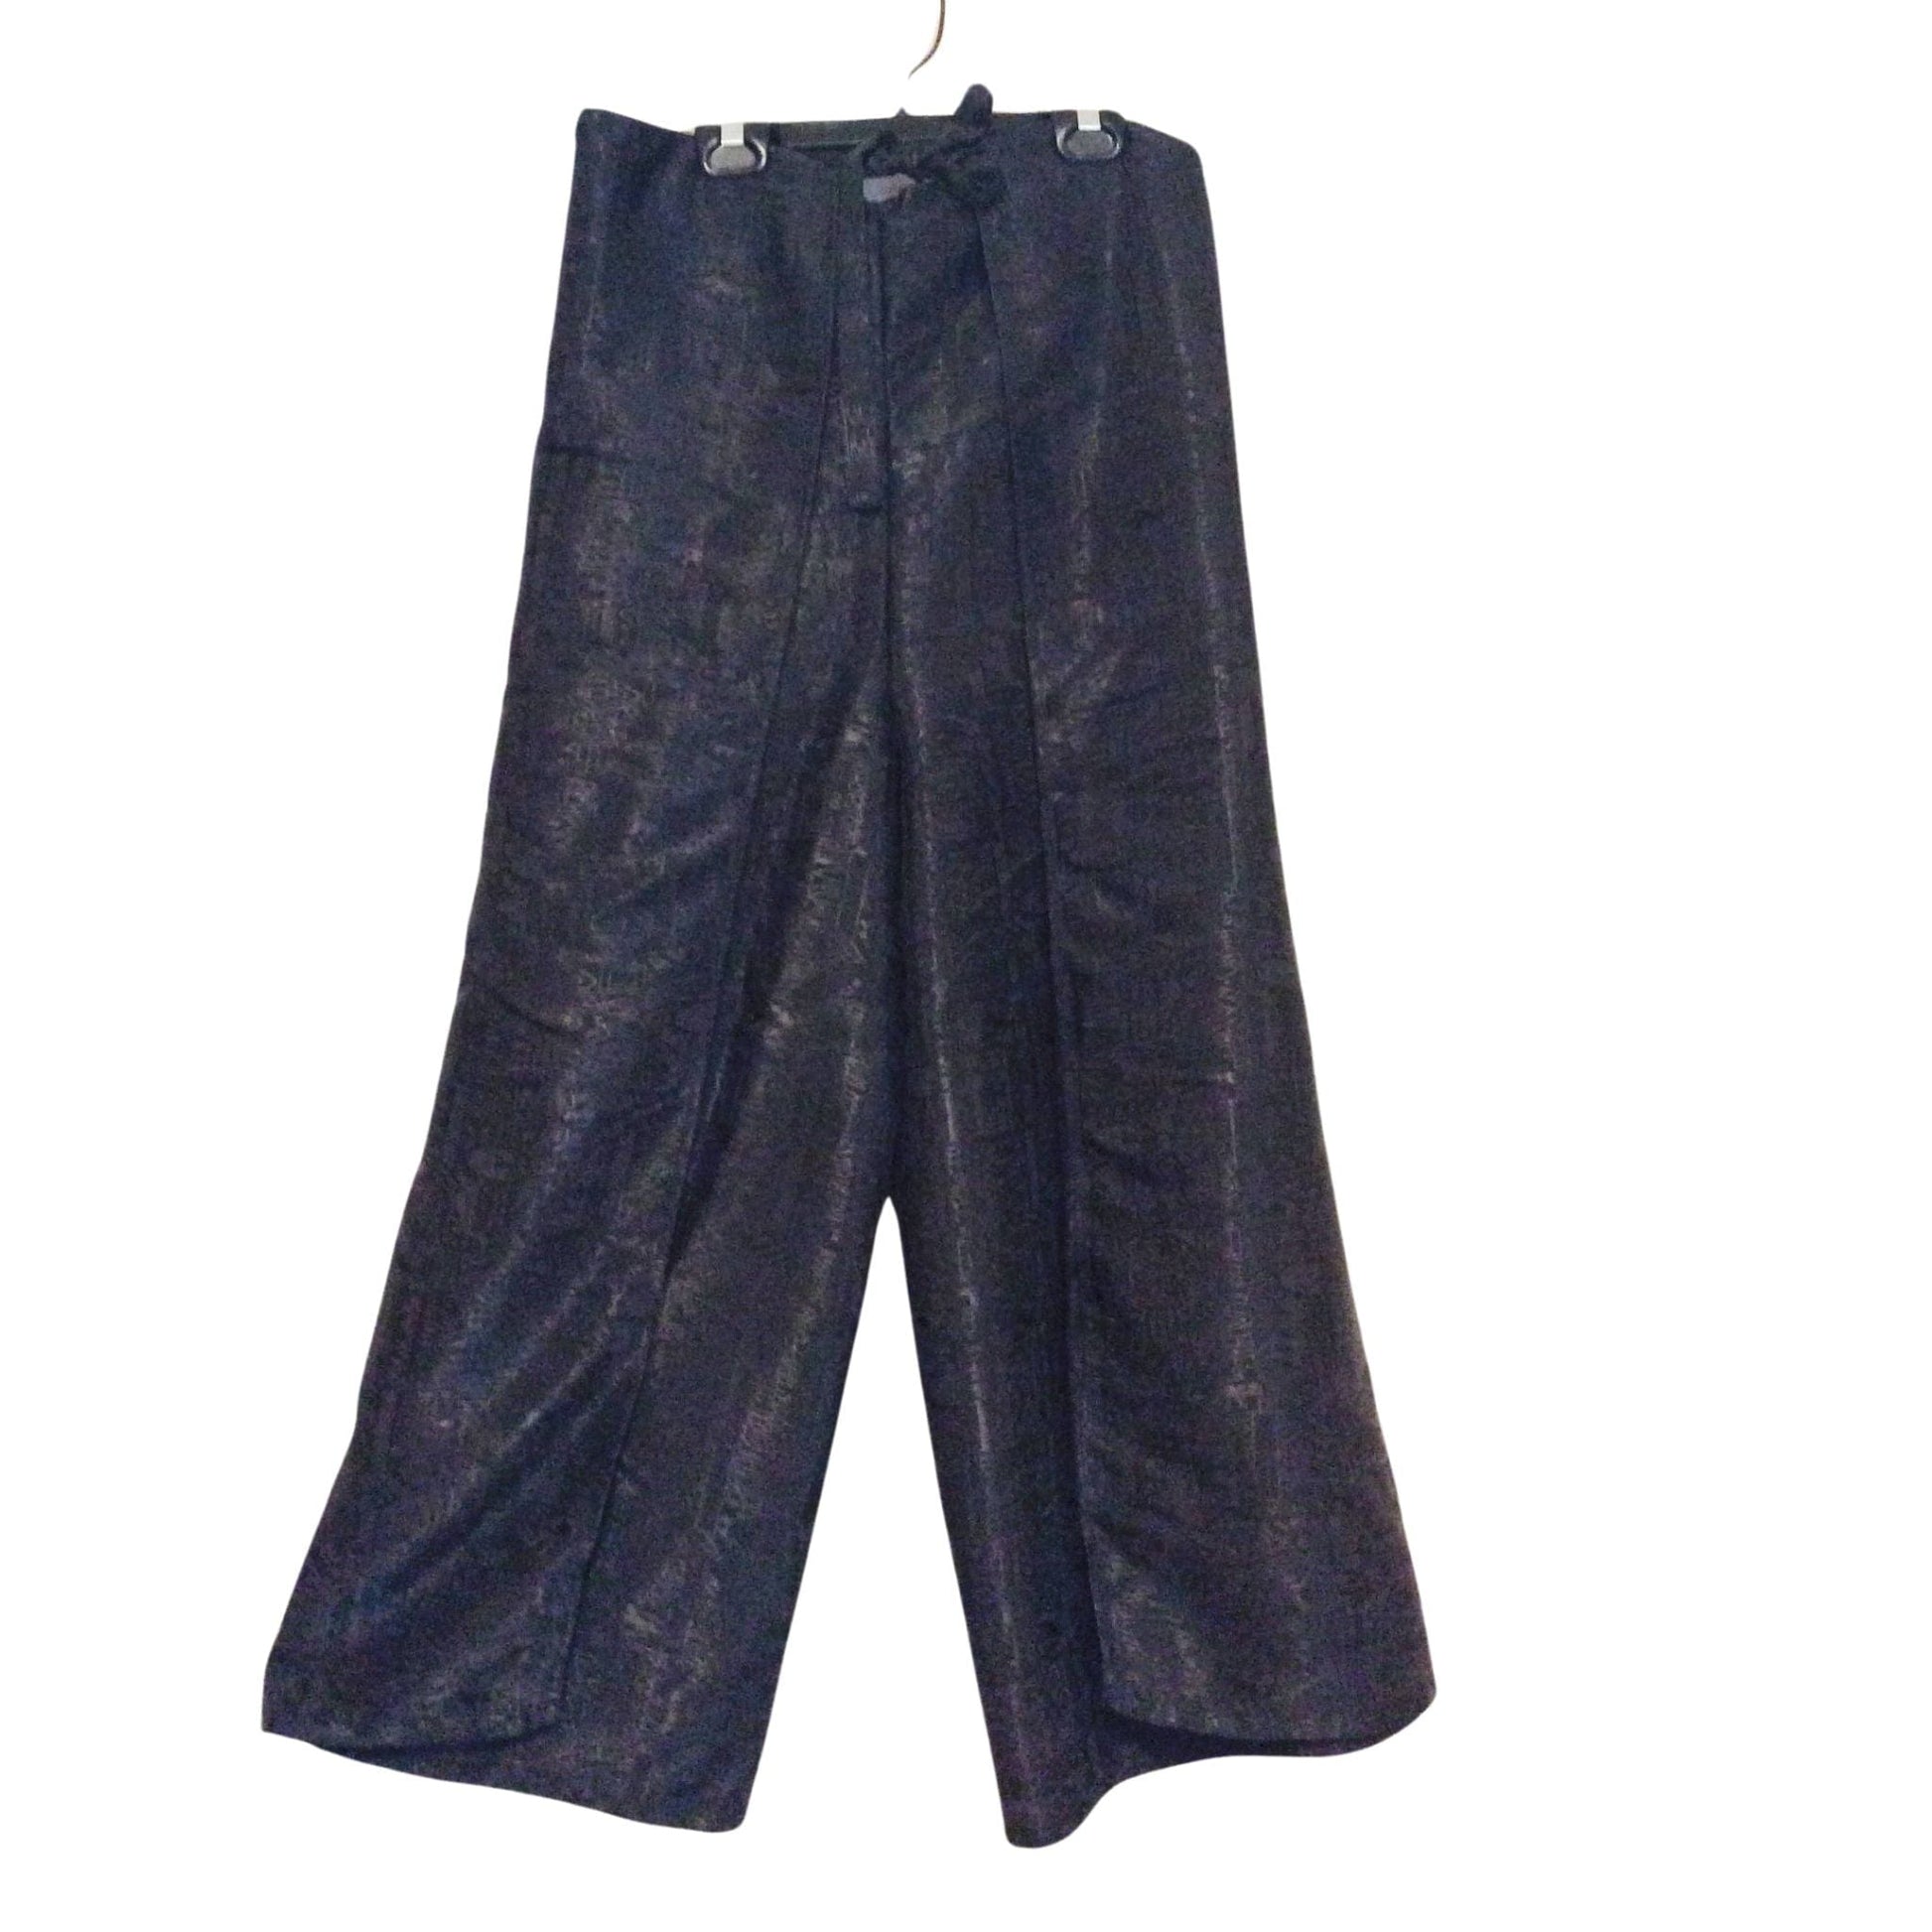 Silk Thai Split Pants Medium / Black / Vintage 1980s